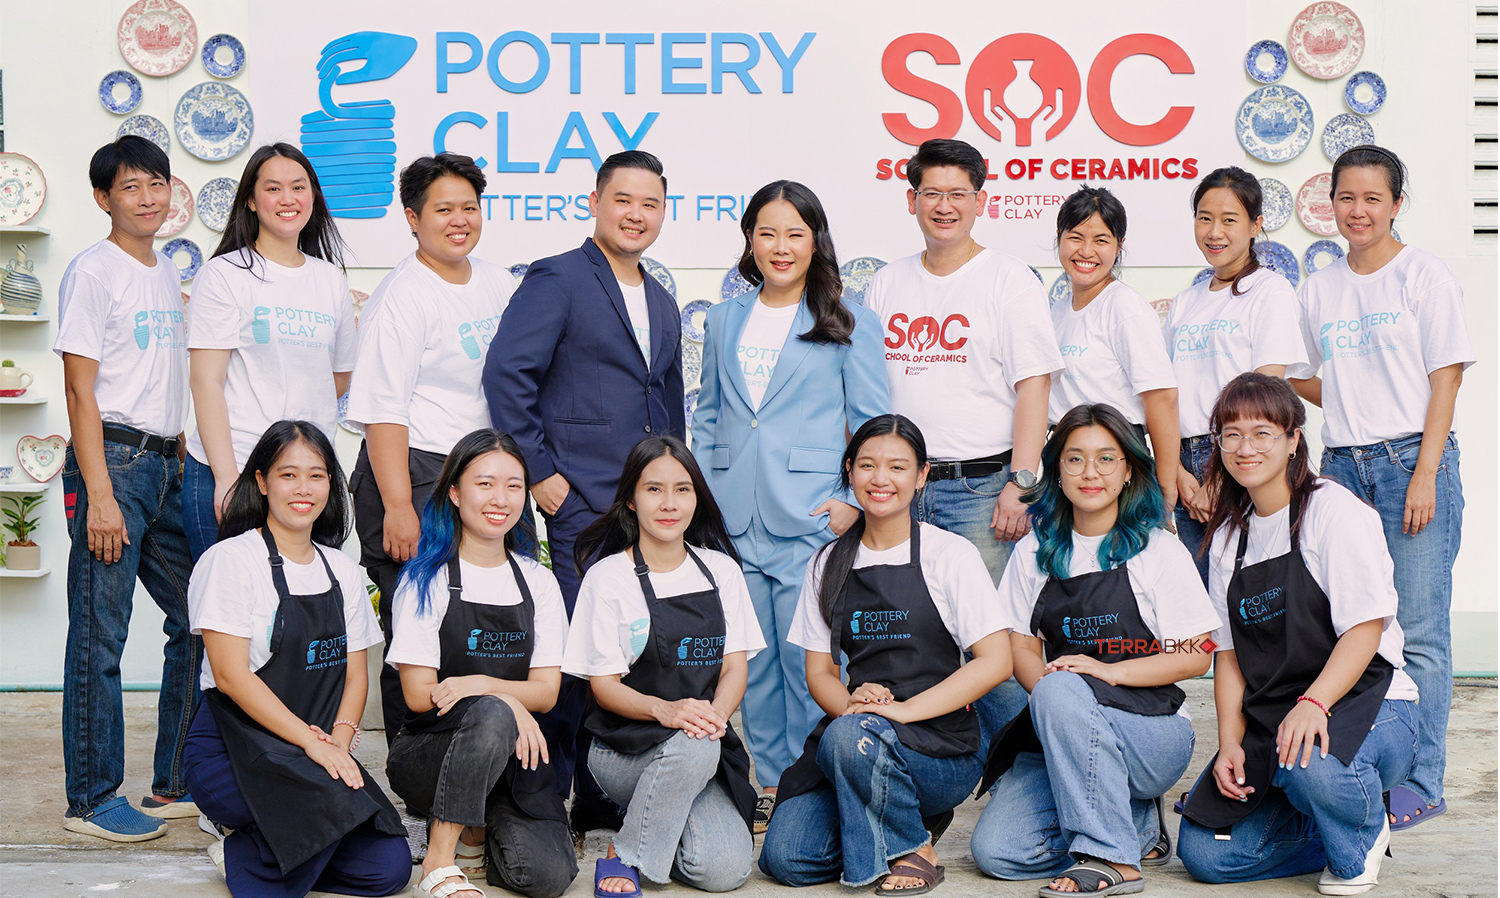 “พอทเทอรี เคลย์” ศูนย์รวมสินค้าและบริการเพื่อผู้ประกอบการเซรามิคและคนรักงานปั้น ที่ครบวงจรแห่งแรกในไทย